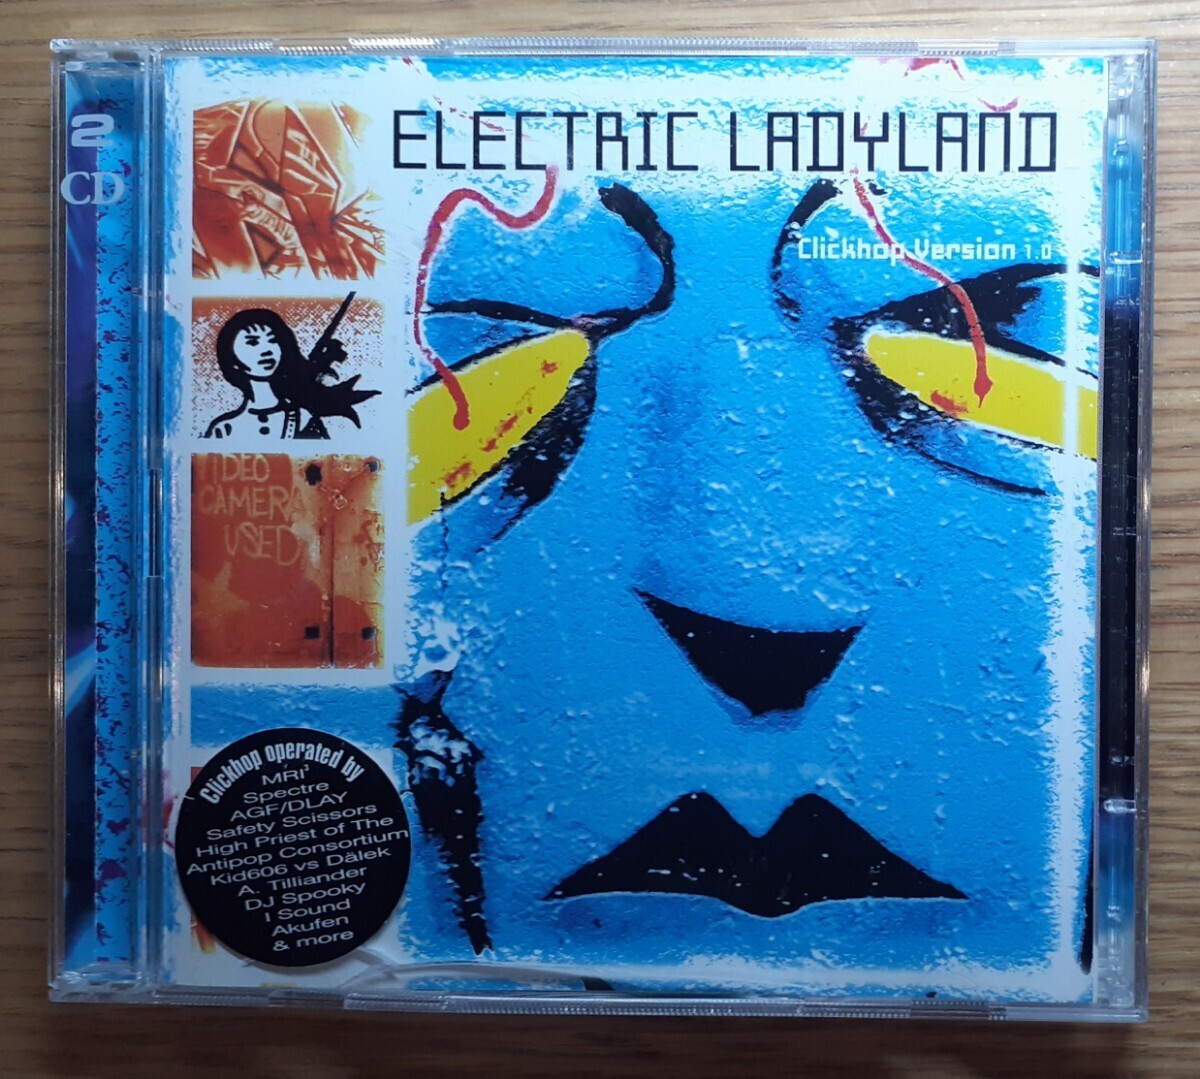 VA /Electric Ladyland Clickhop Version 1.0 CD 2枚組akufen alva noto_画像1